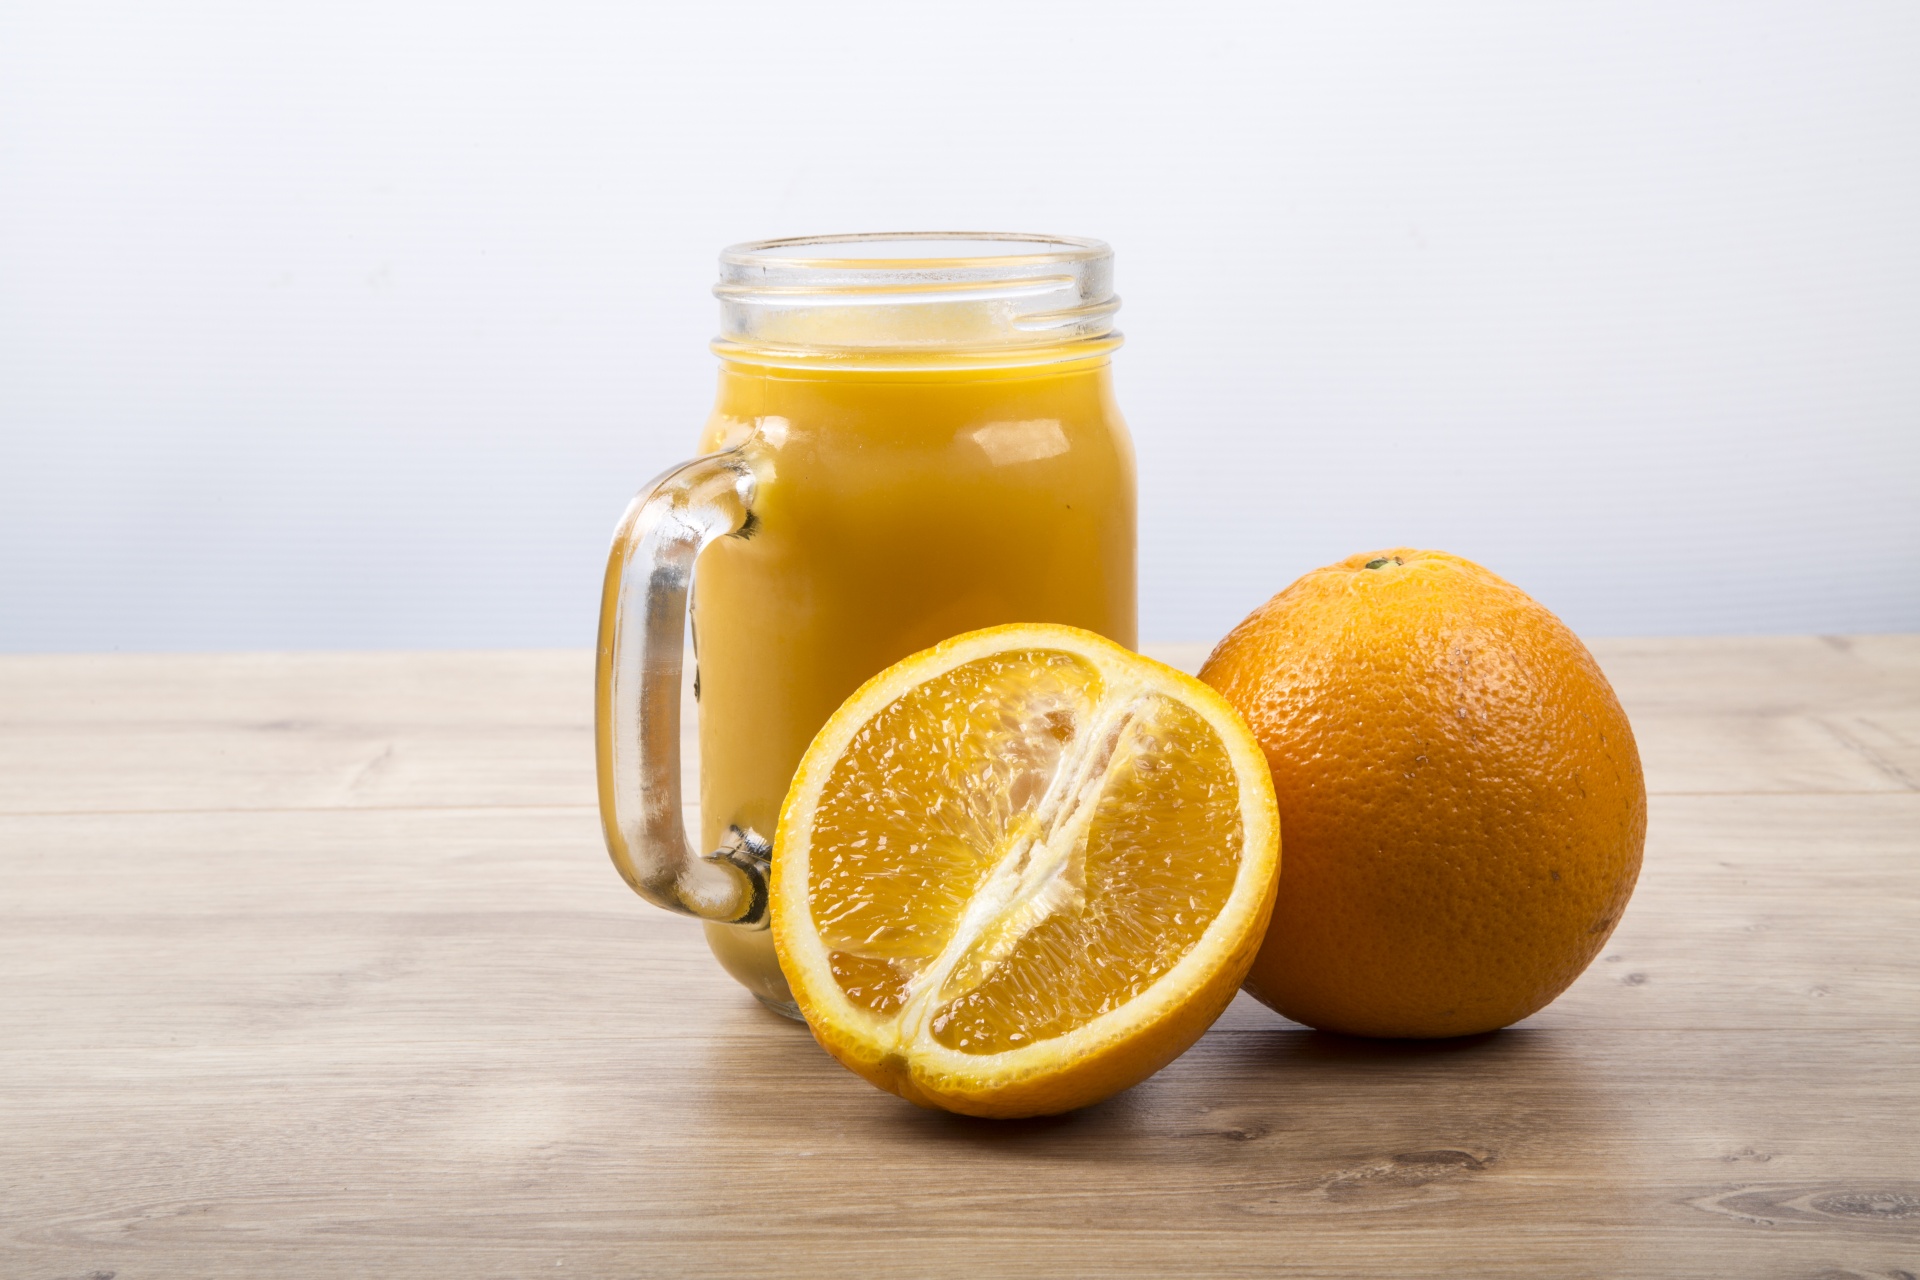 Сок при температуре можно. Апельсиновый сок. Касторка с апельсиновым соком. Стакан апельсинового сока. Касторовое масло с апельсиновым соком.